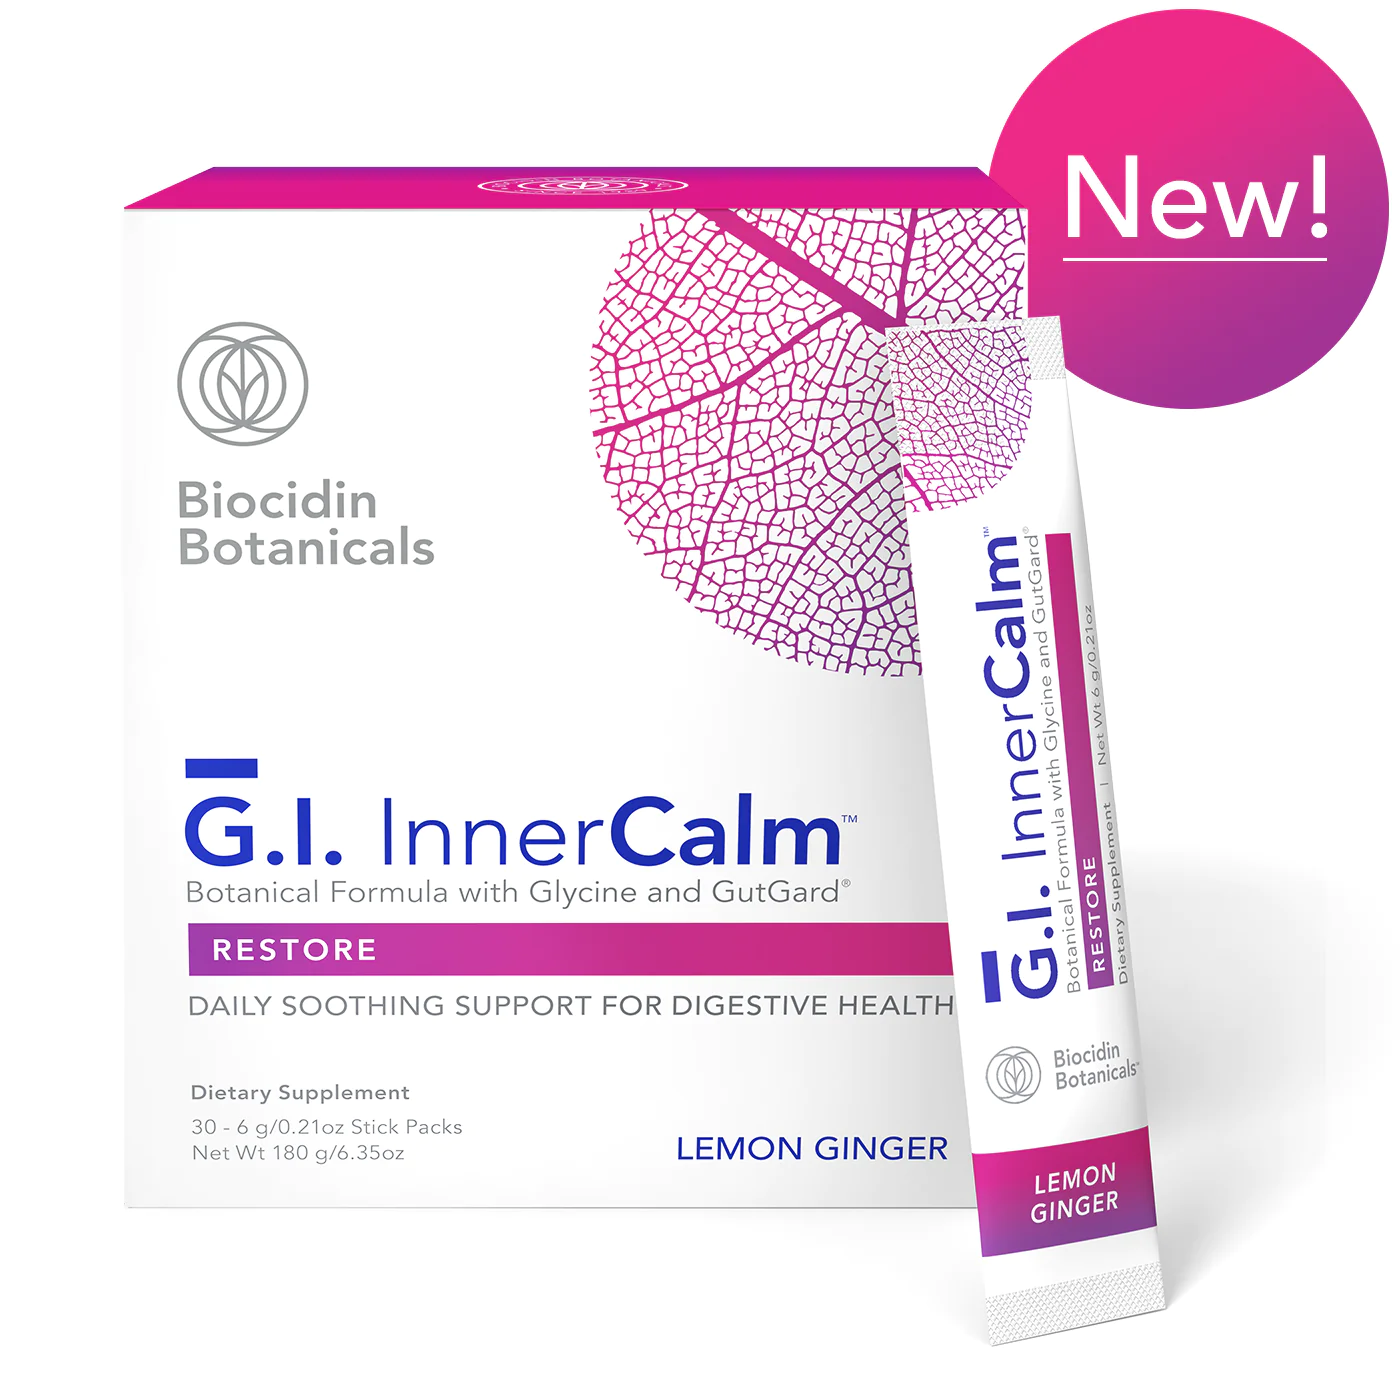 Biocidin GI Inner Calm 30 stick packets